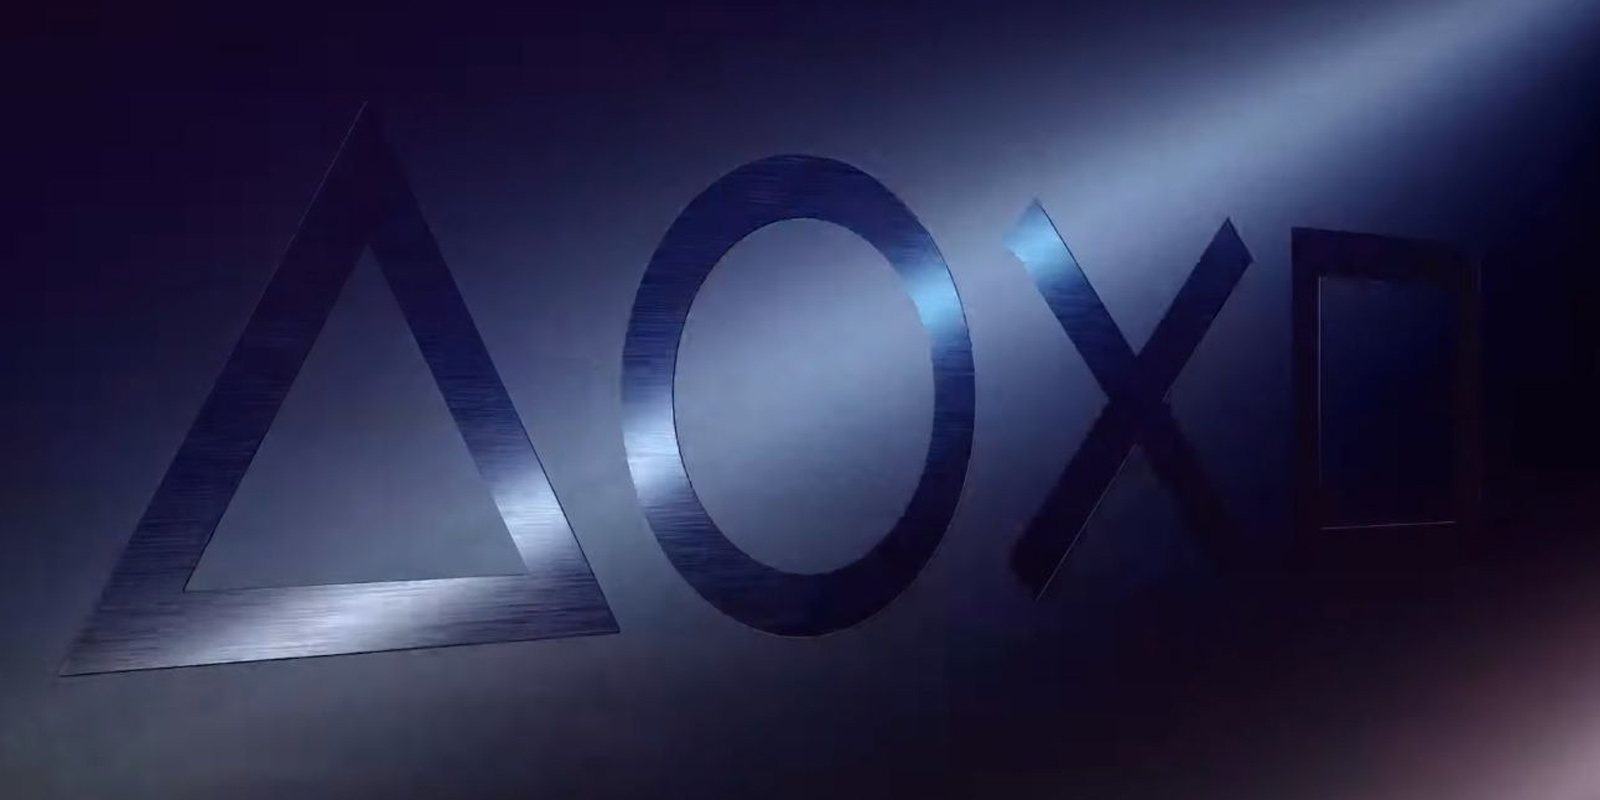 La PlayStation 4 limitada 'Days of Play' volverá a estar disponible